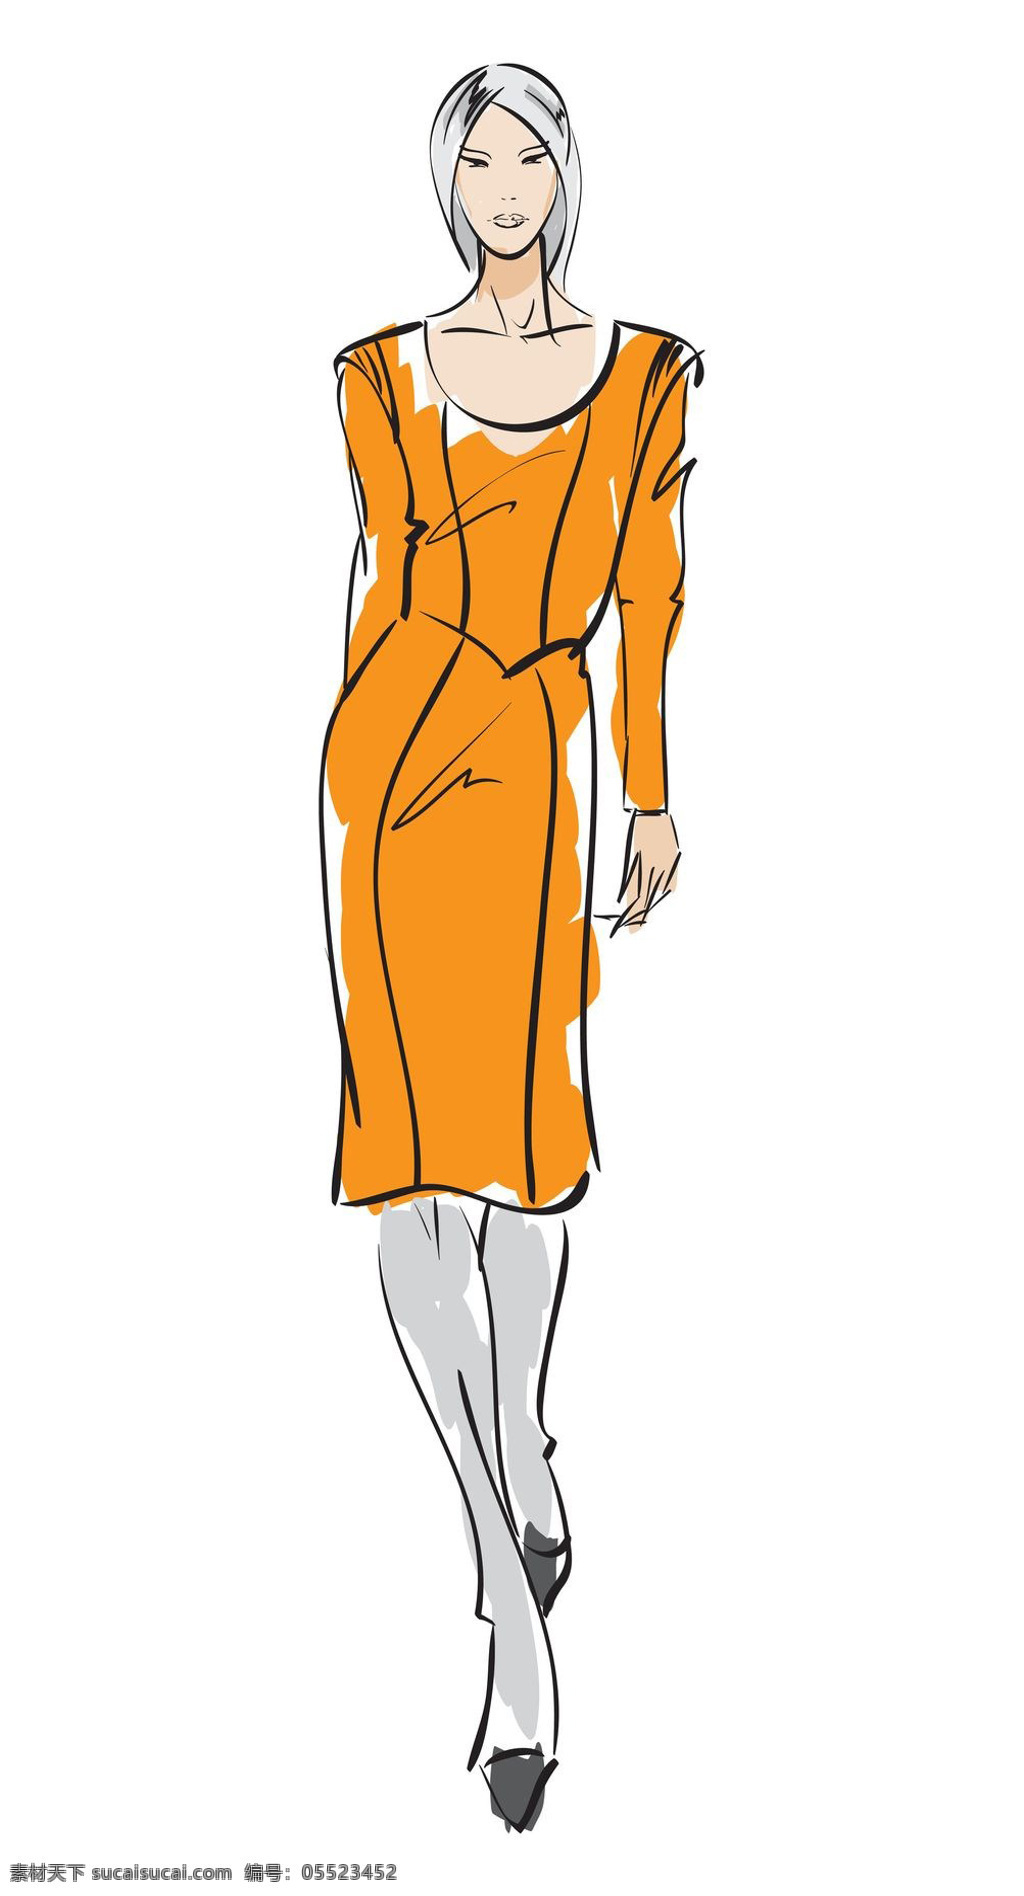 橙色 连衣裙 设计图 服装设计 时尚女装 职业女装 职业装 女装设计 效果图 短裙 衬衫 服装 服装效果图